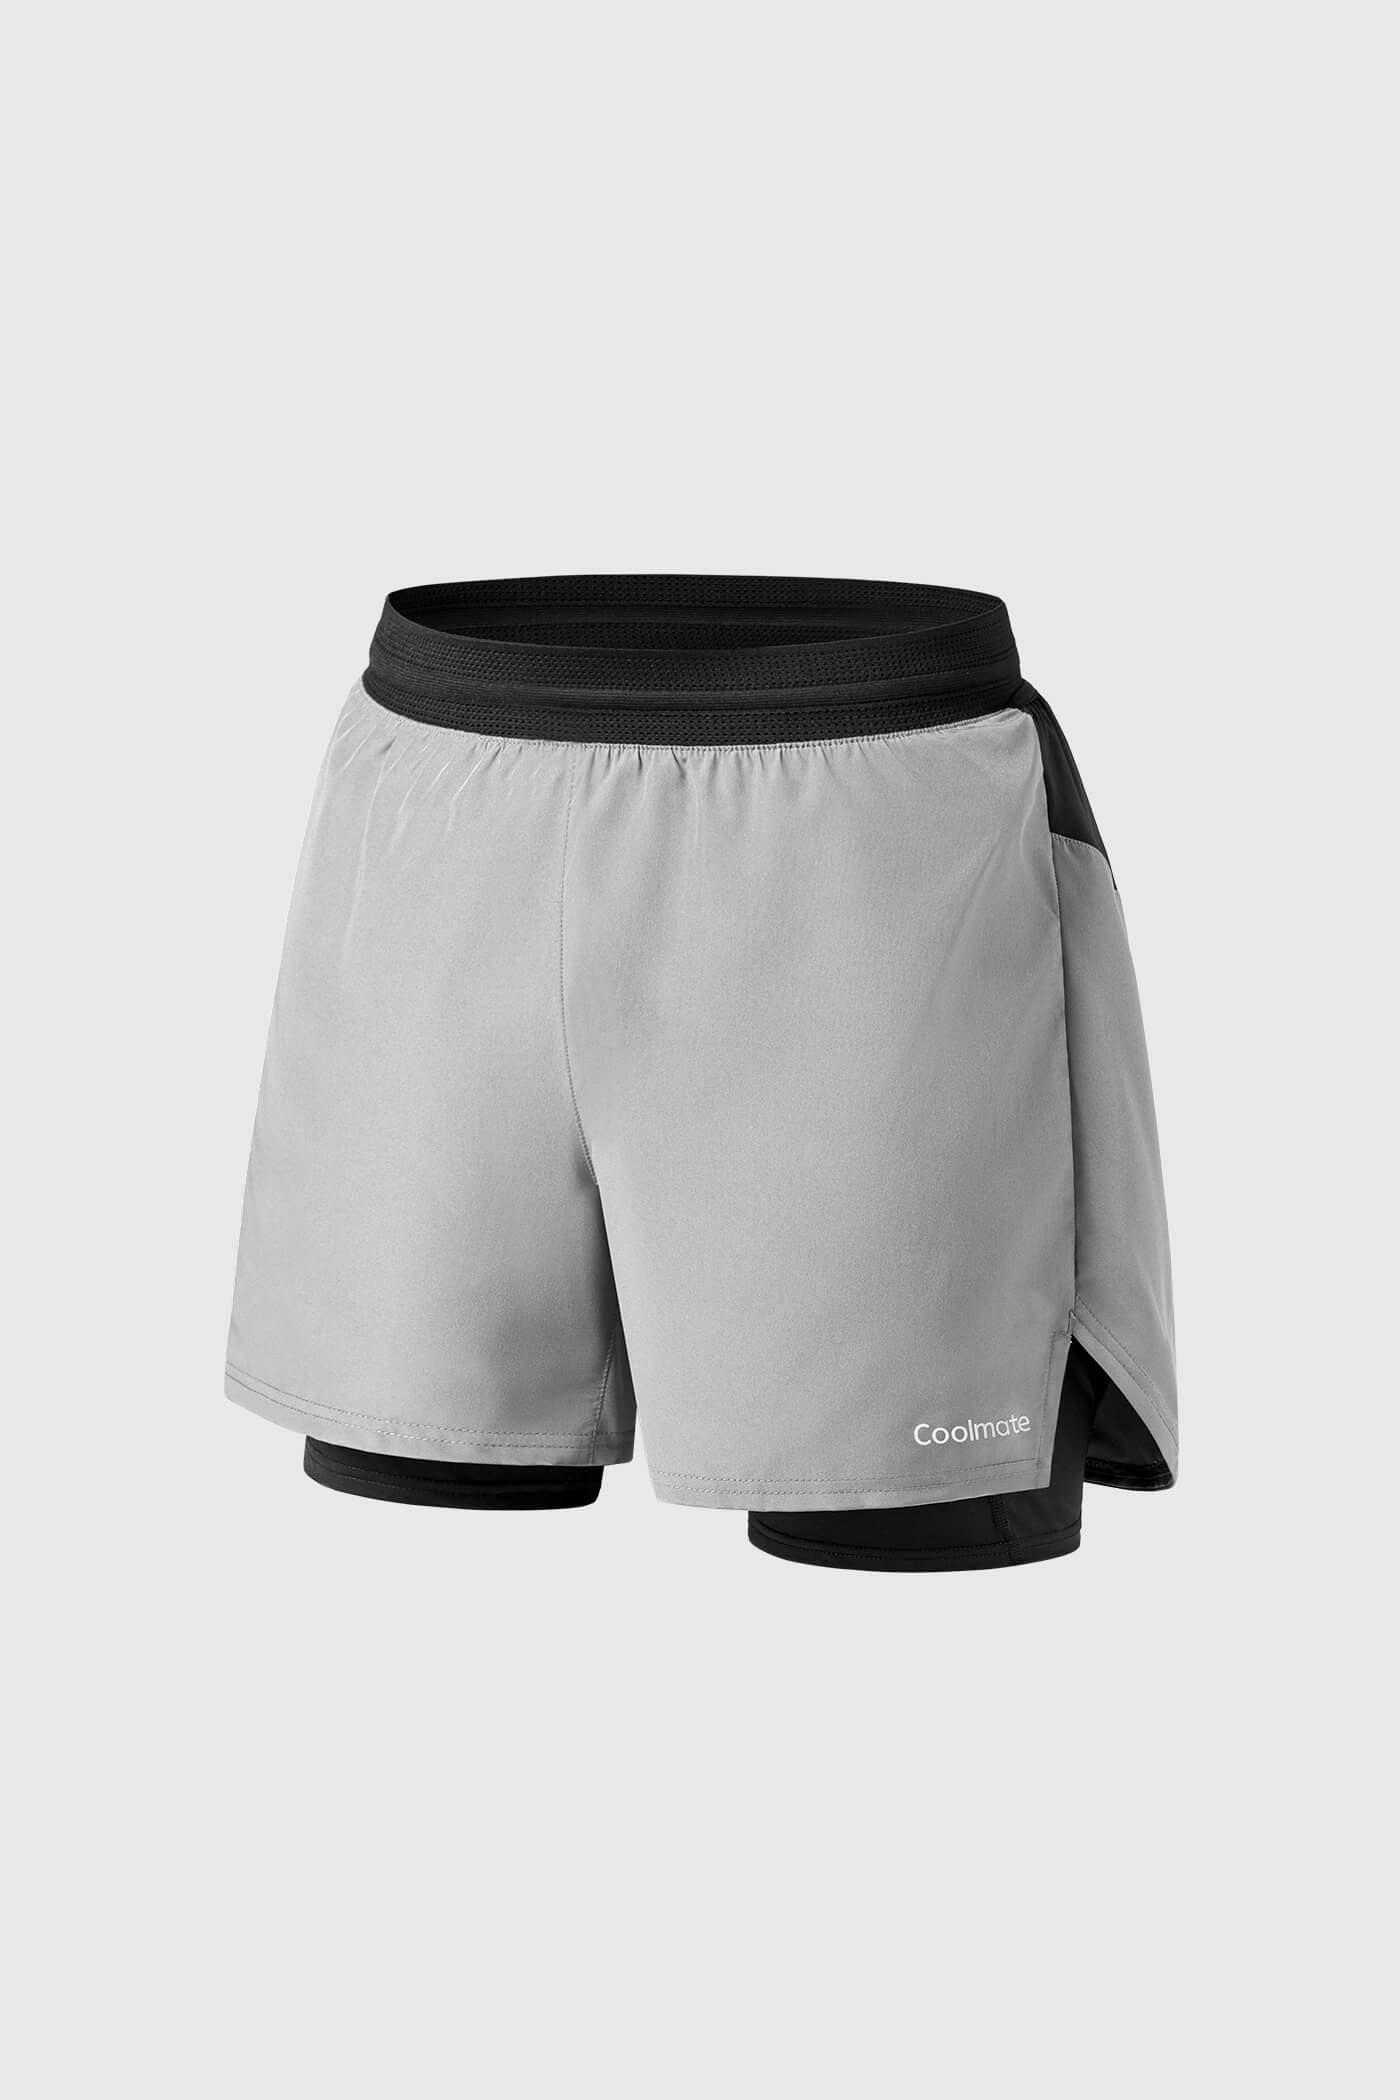 Shorts chạy bộ Essential xam-nhat